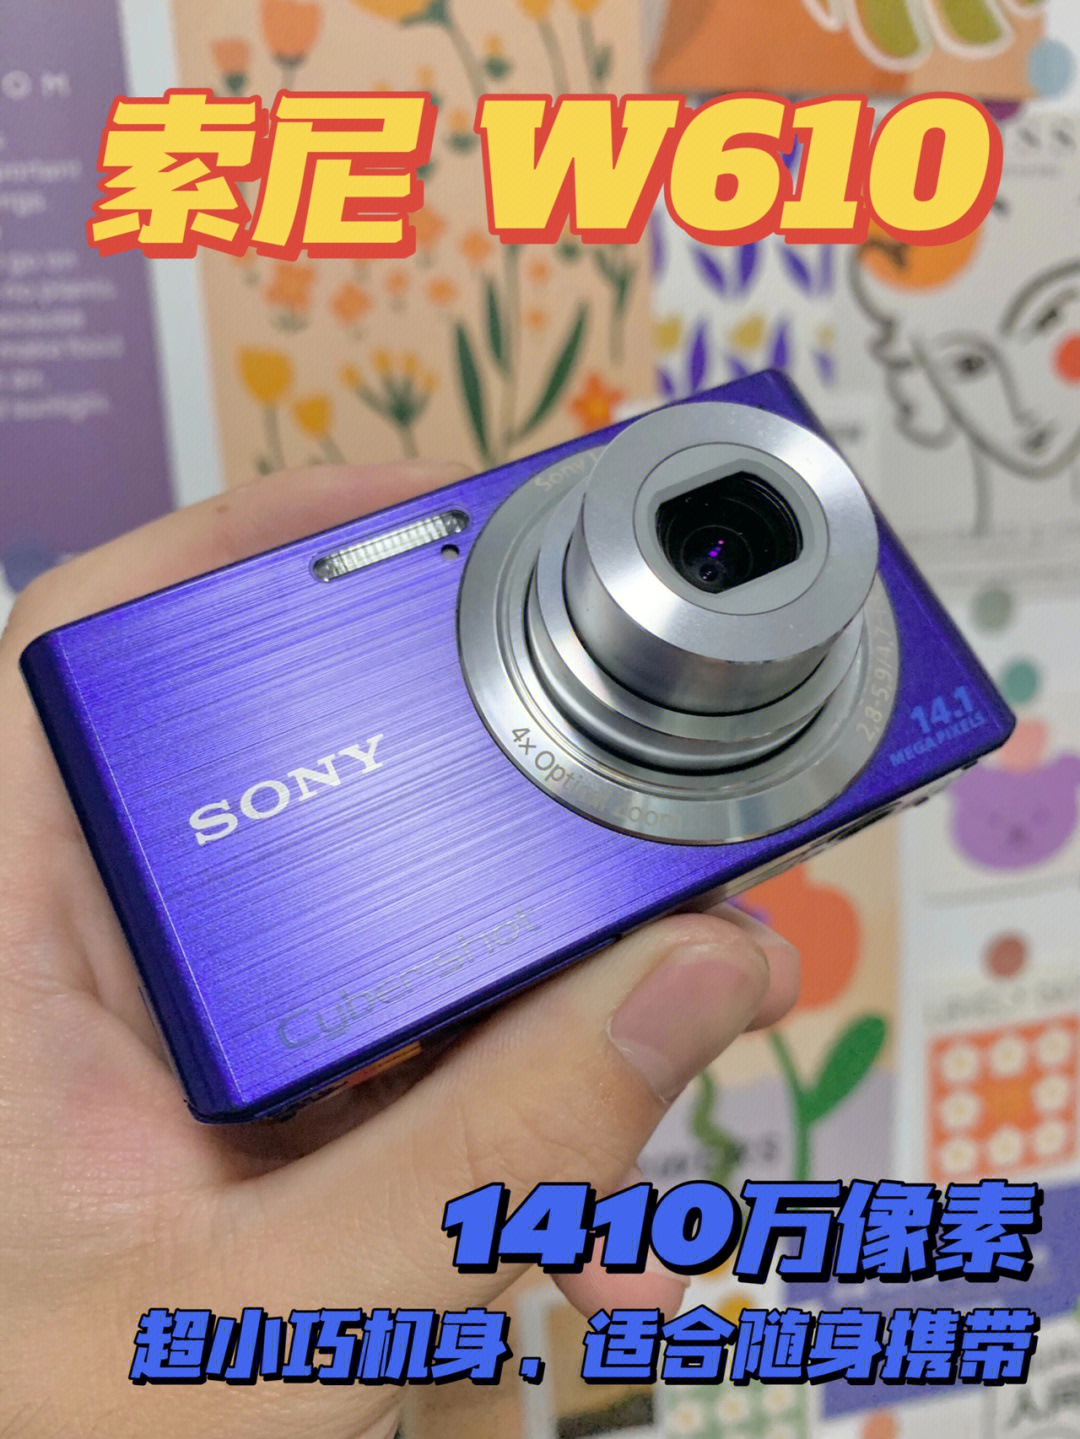 索尼w610ccd相机